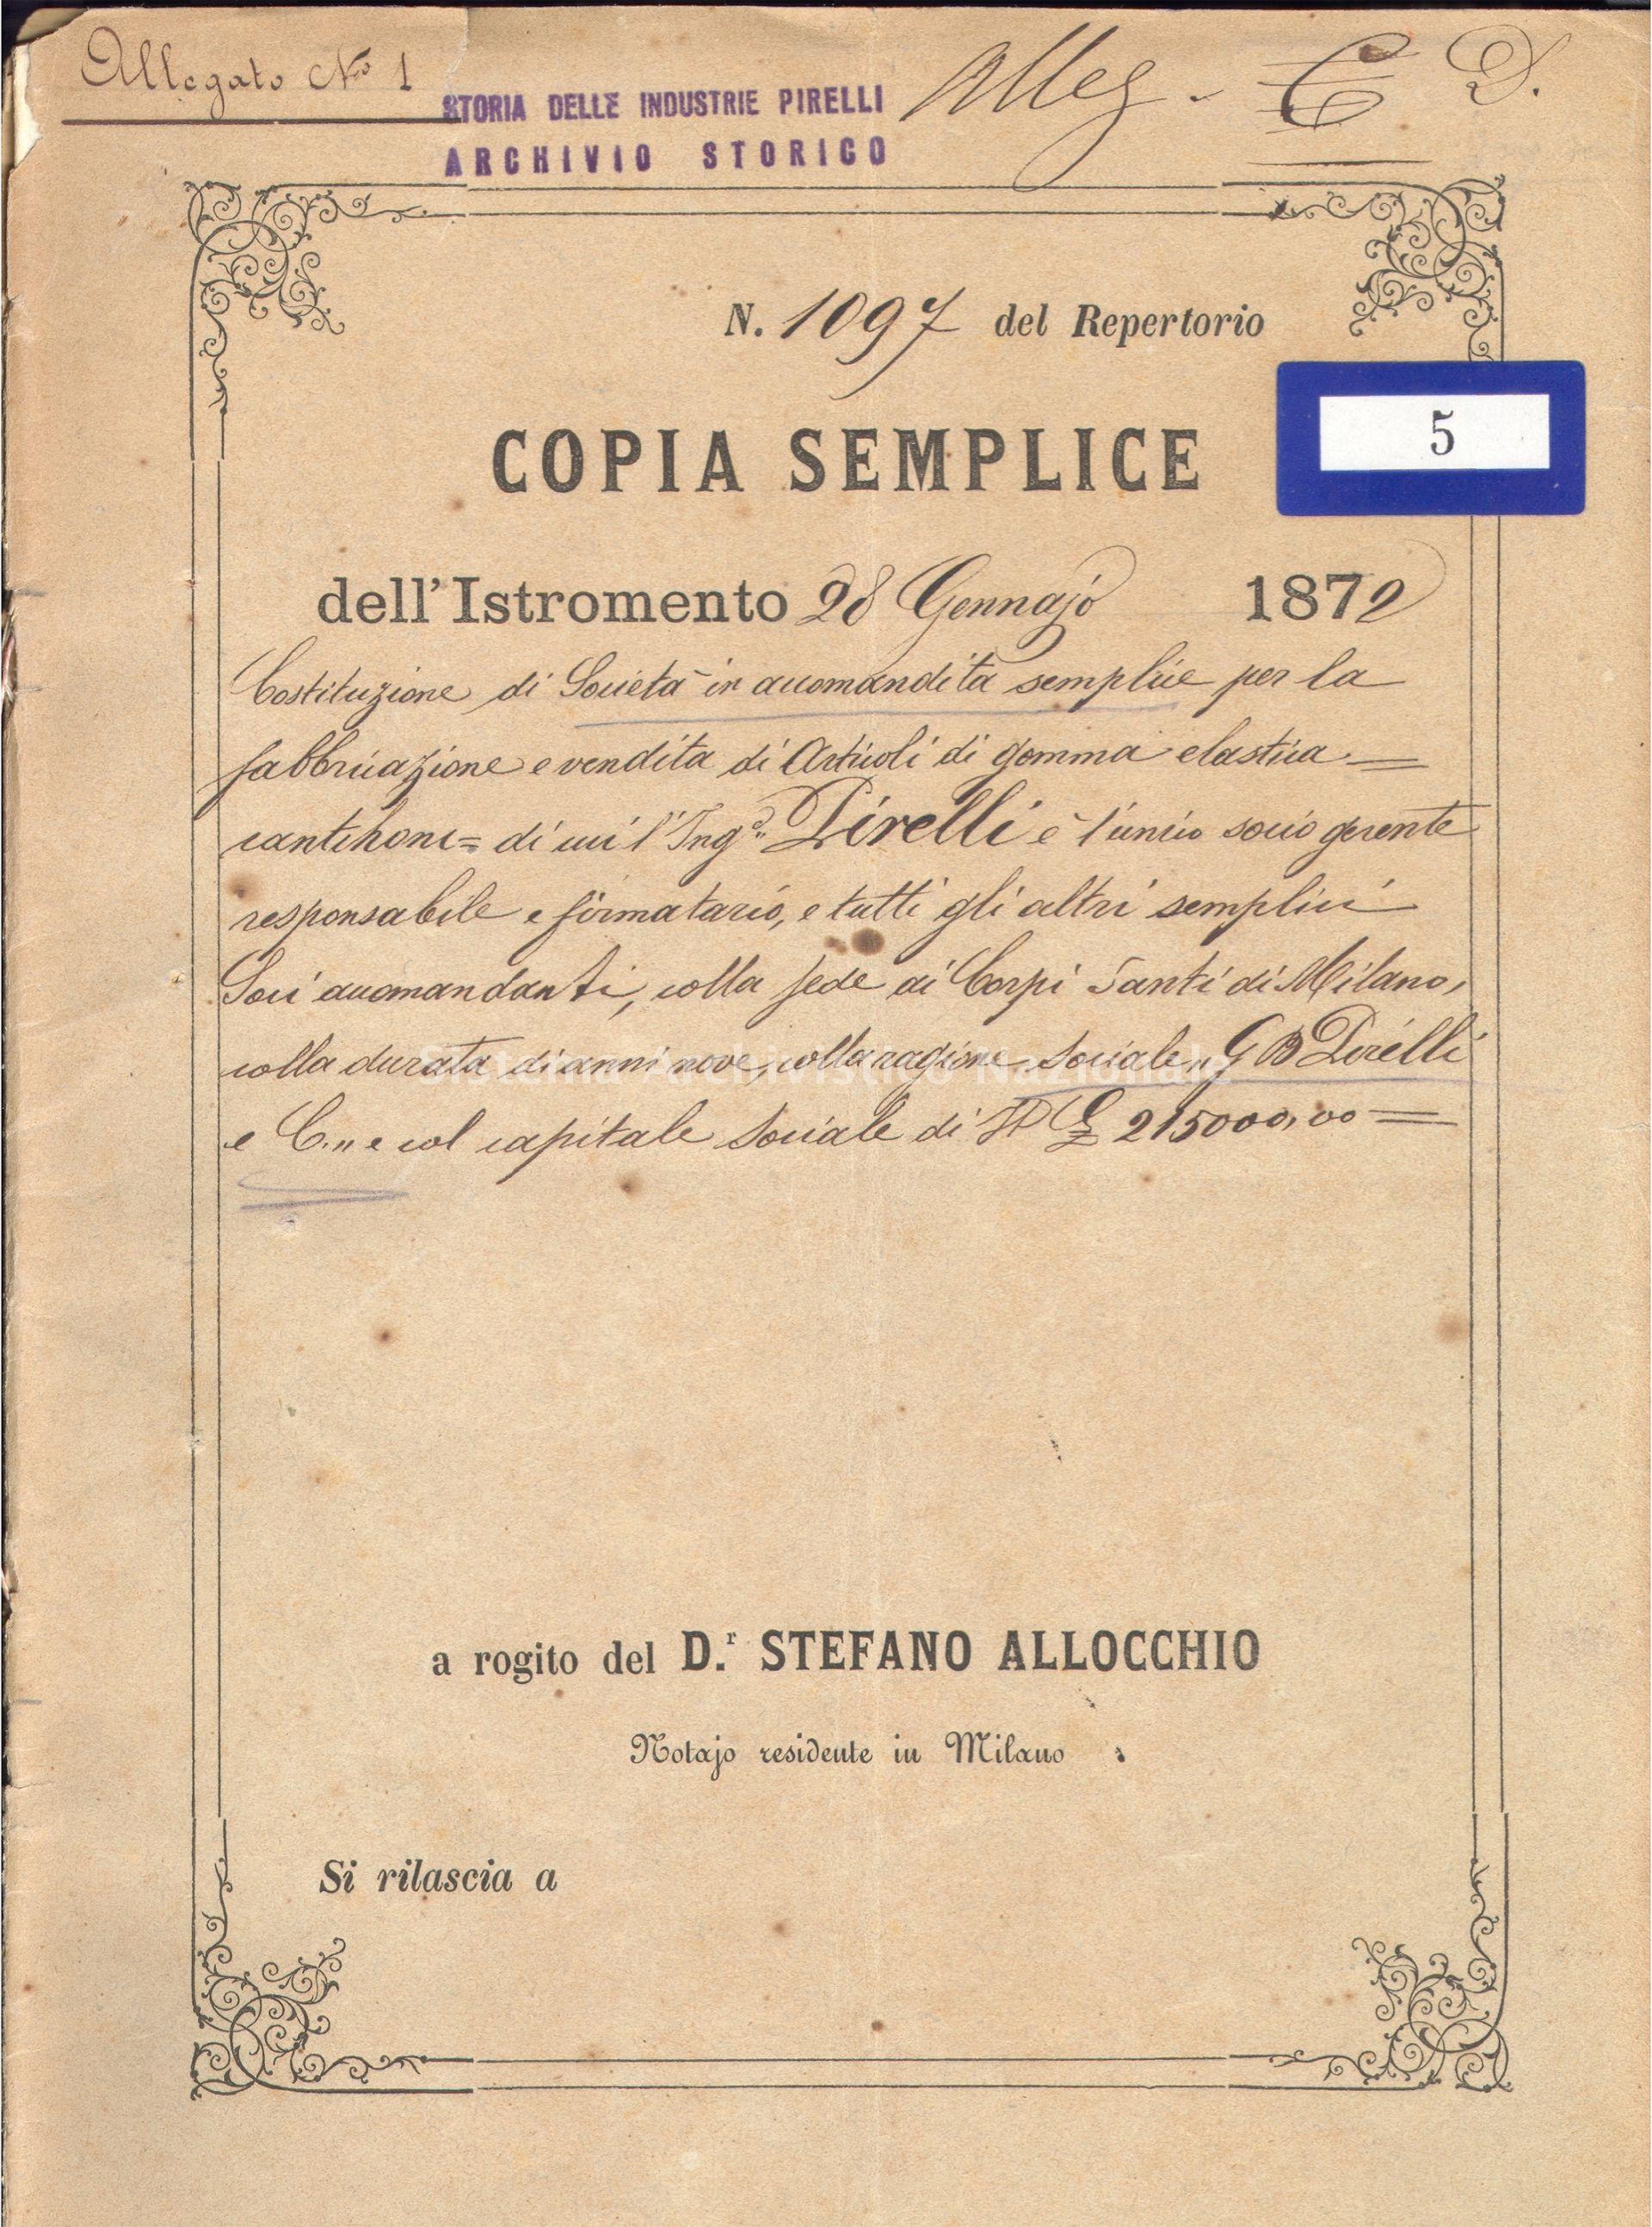   Atto costitutivo della G. B. Pirelli e C., 1872 (Fondazione Pirelli).
